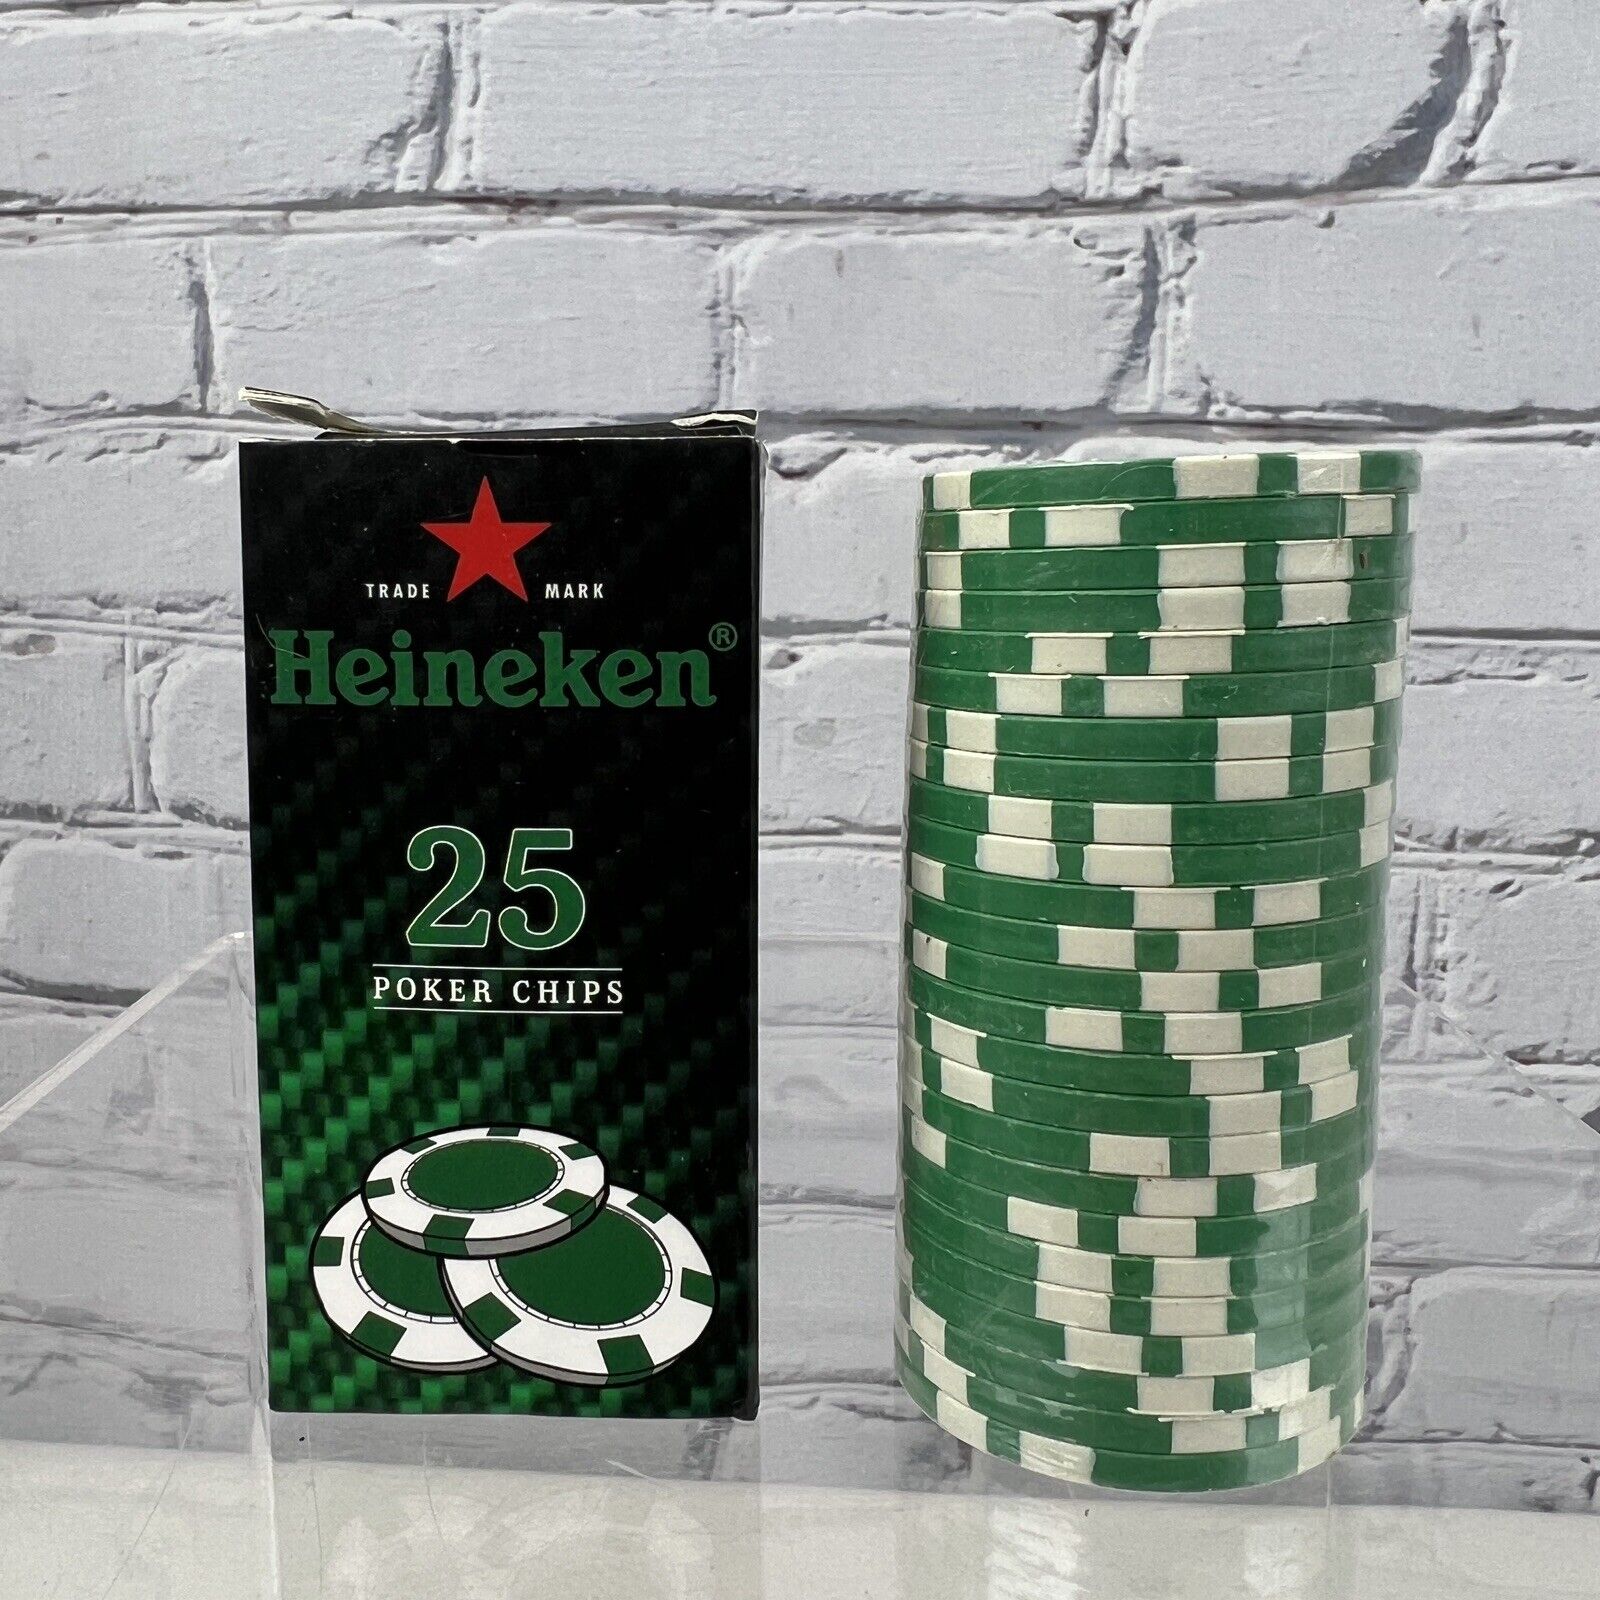 Heineken POKER CHIPS Set of 25 Sealed Promotional Chips